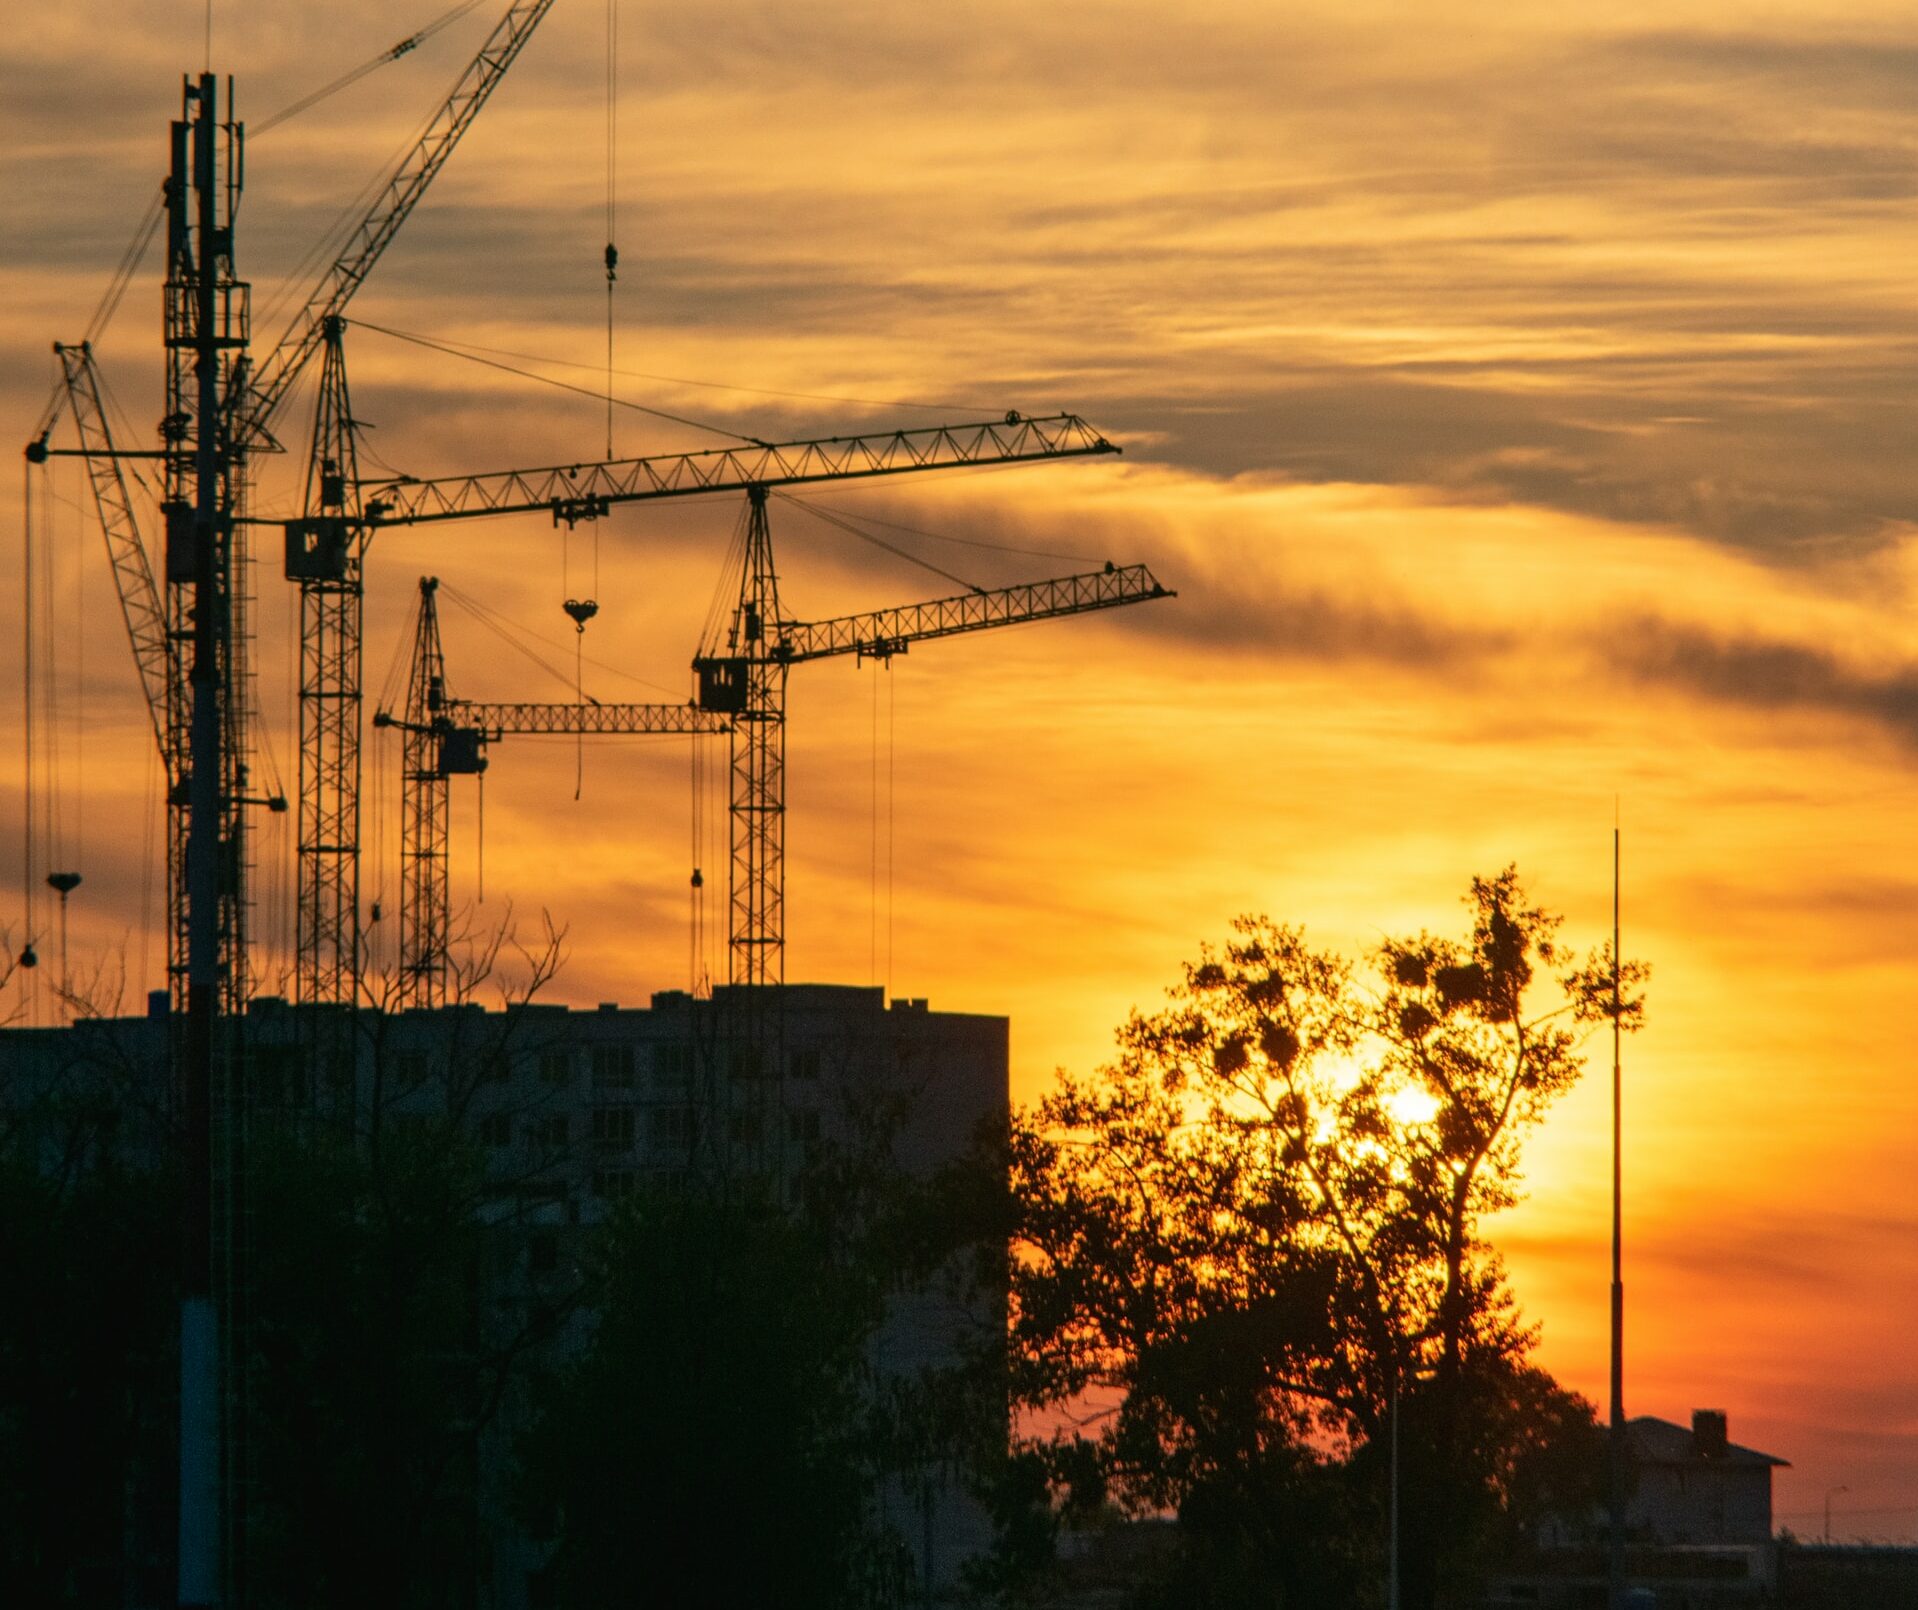 Inversiones inmobiliarias en Rosario y Córdoba: en dónde y en qué proyectos apostar